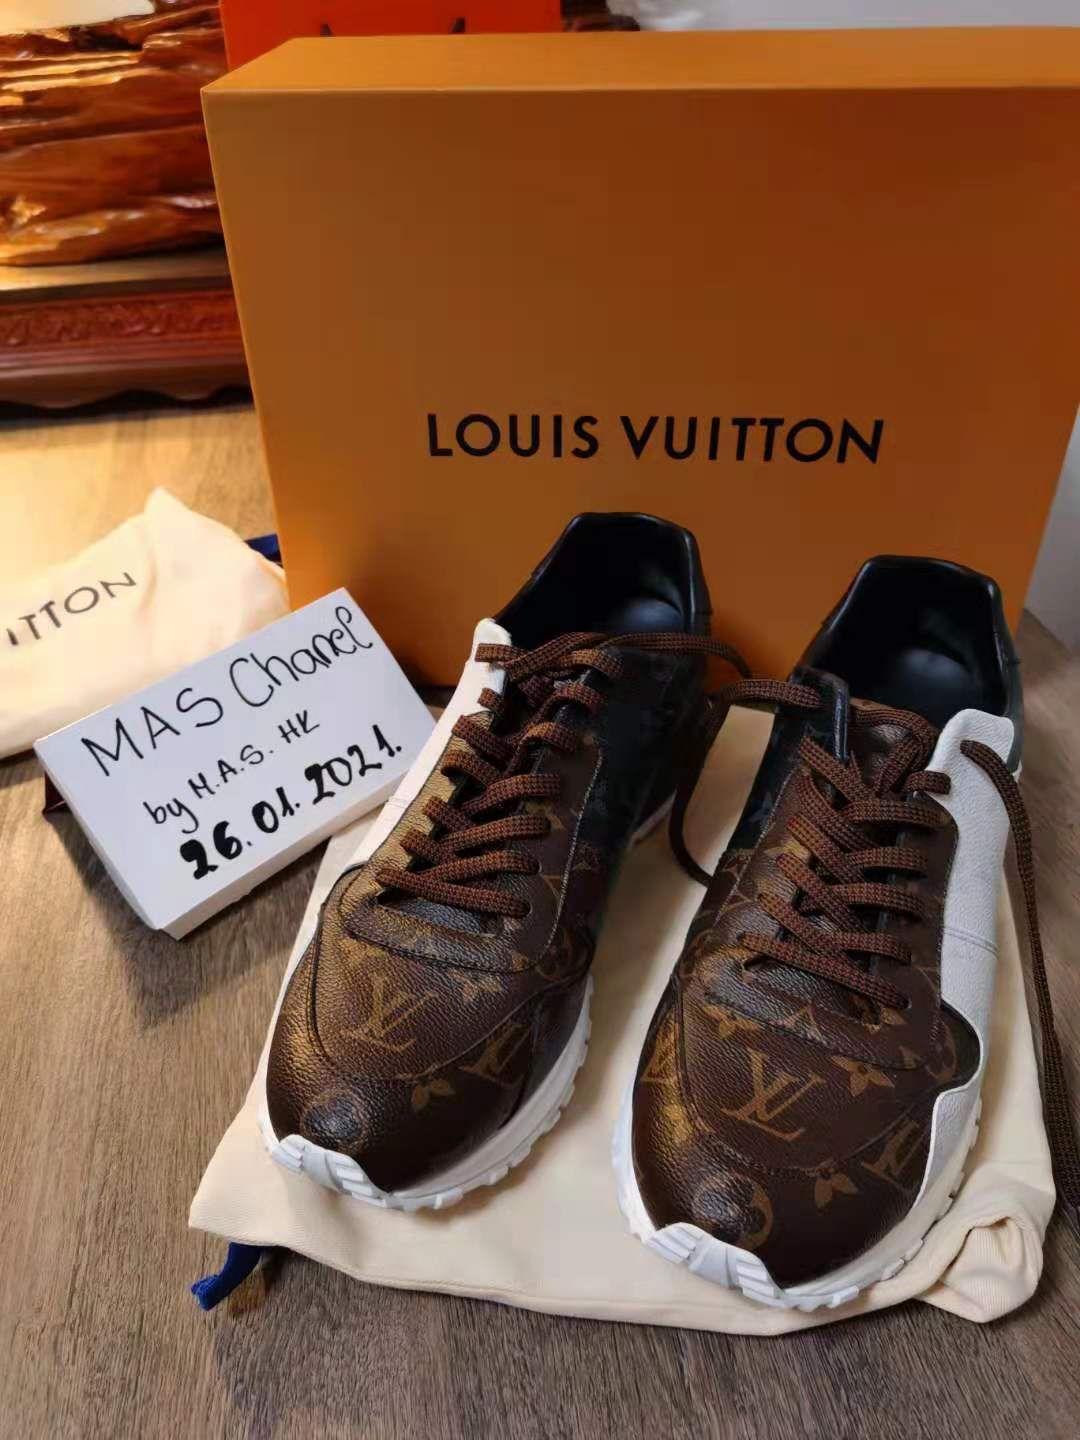 louis vuitton boots men Size 9 Shoes $1760